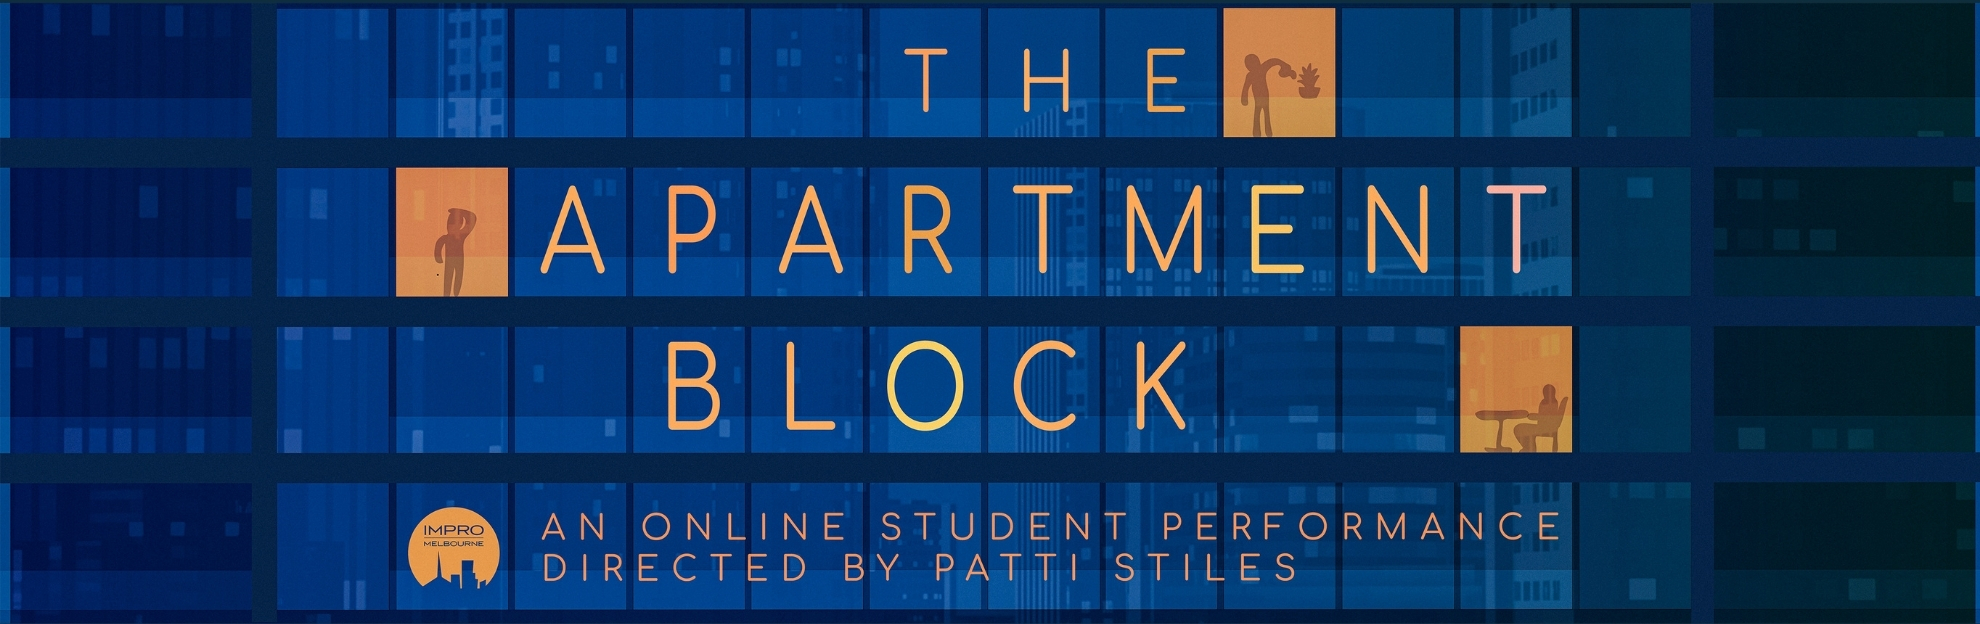 The Apartment Block